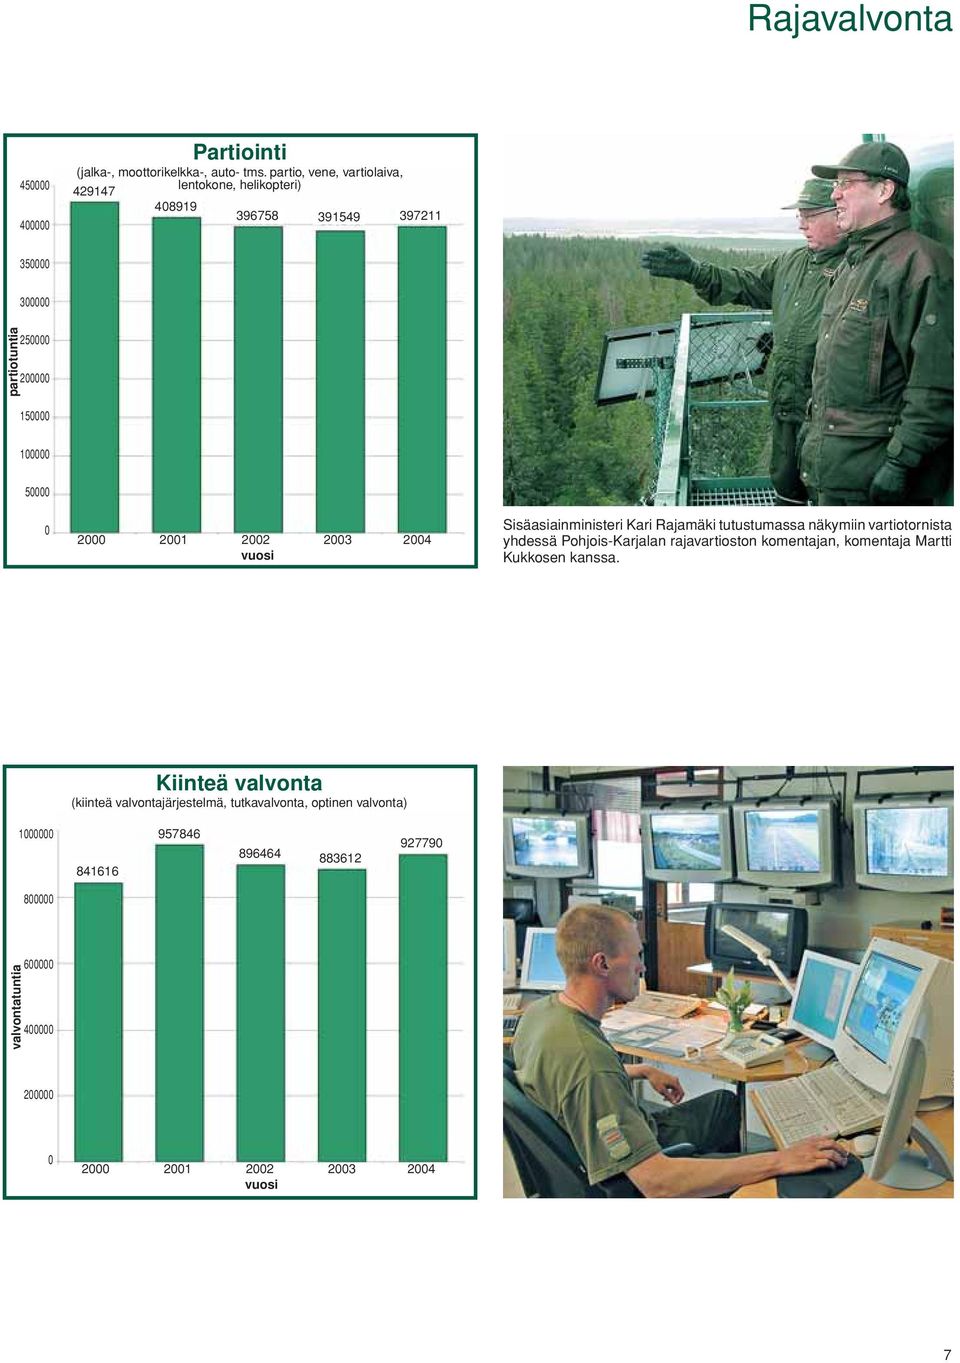 2000 2001 2002 2003 2004 vuosi Sisäasiainministeri Kari Rajamäki tutustumassa näkymiin vartiotornista yhdessä Pohjois-Karjalan rajavartioston